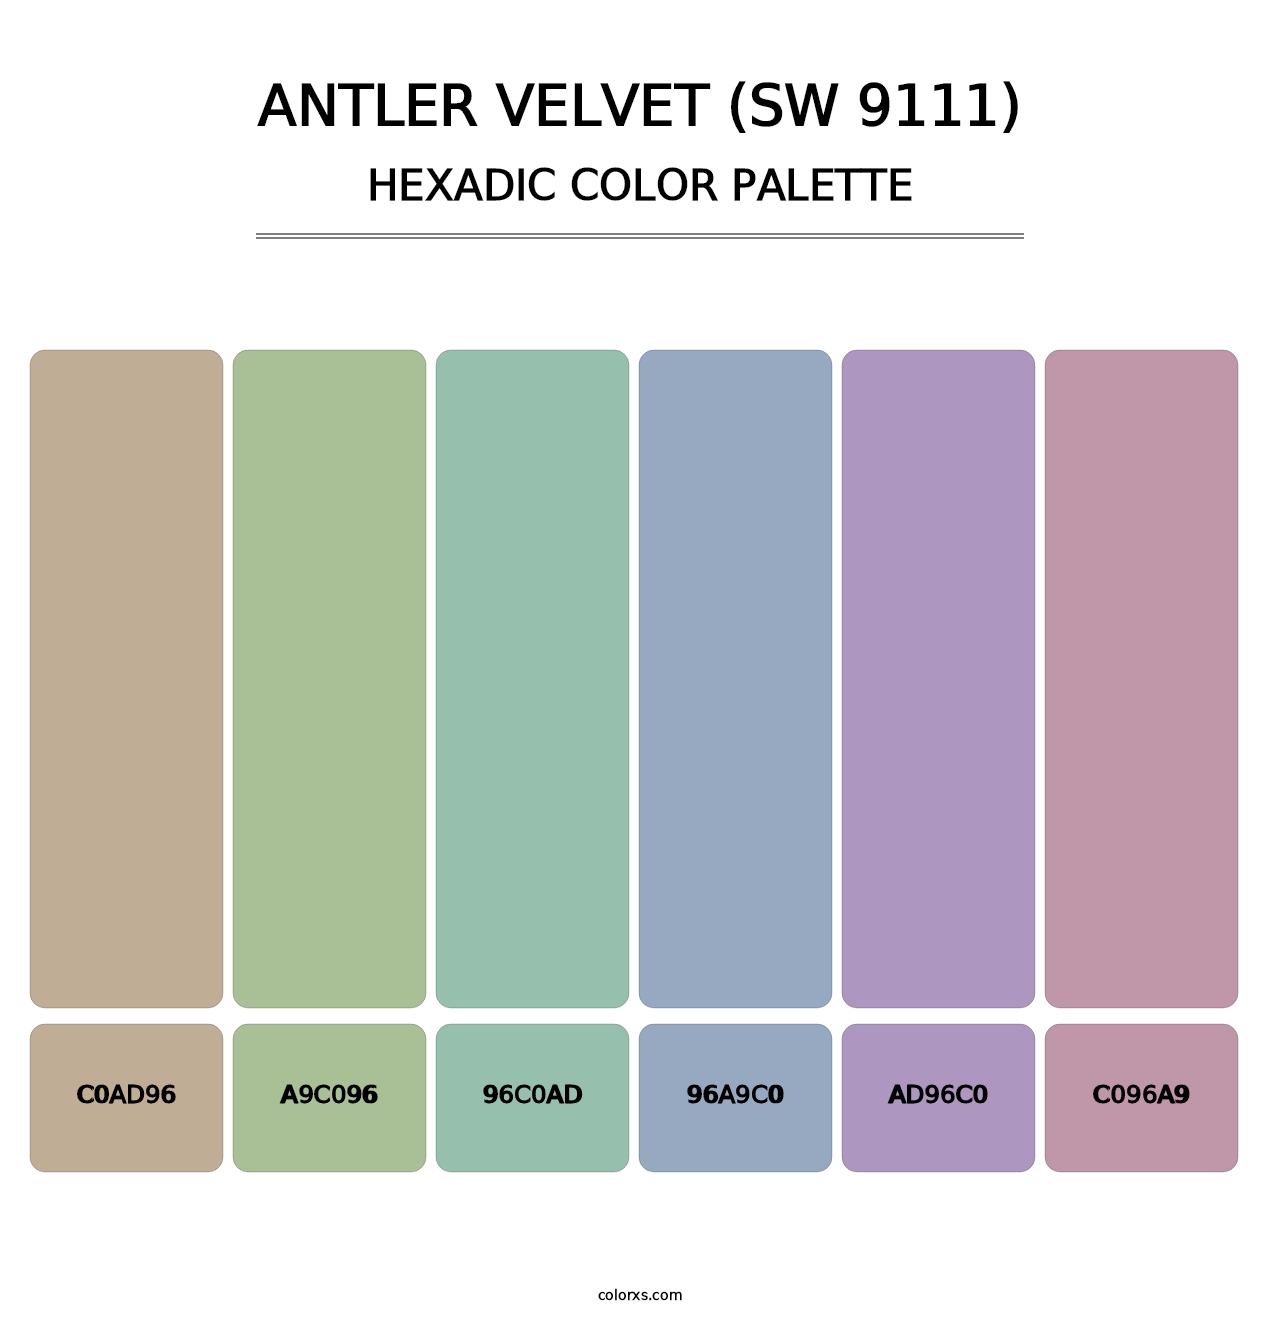 Antler Velvet (SW 9111) - Hexadic Color Palette